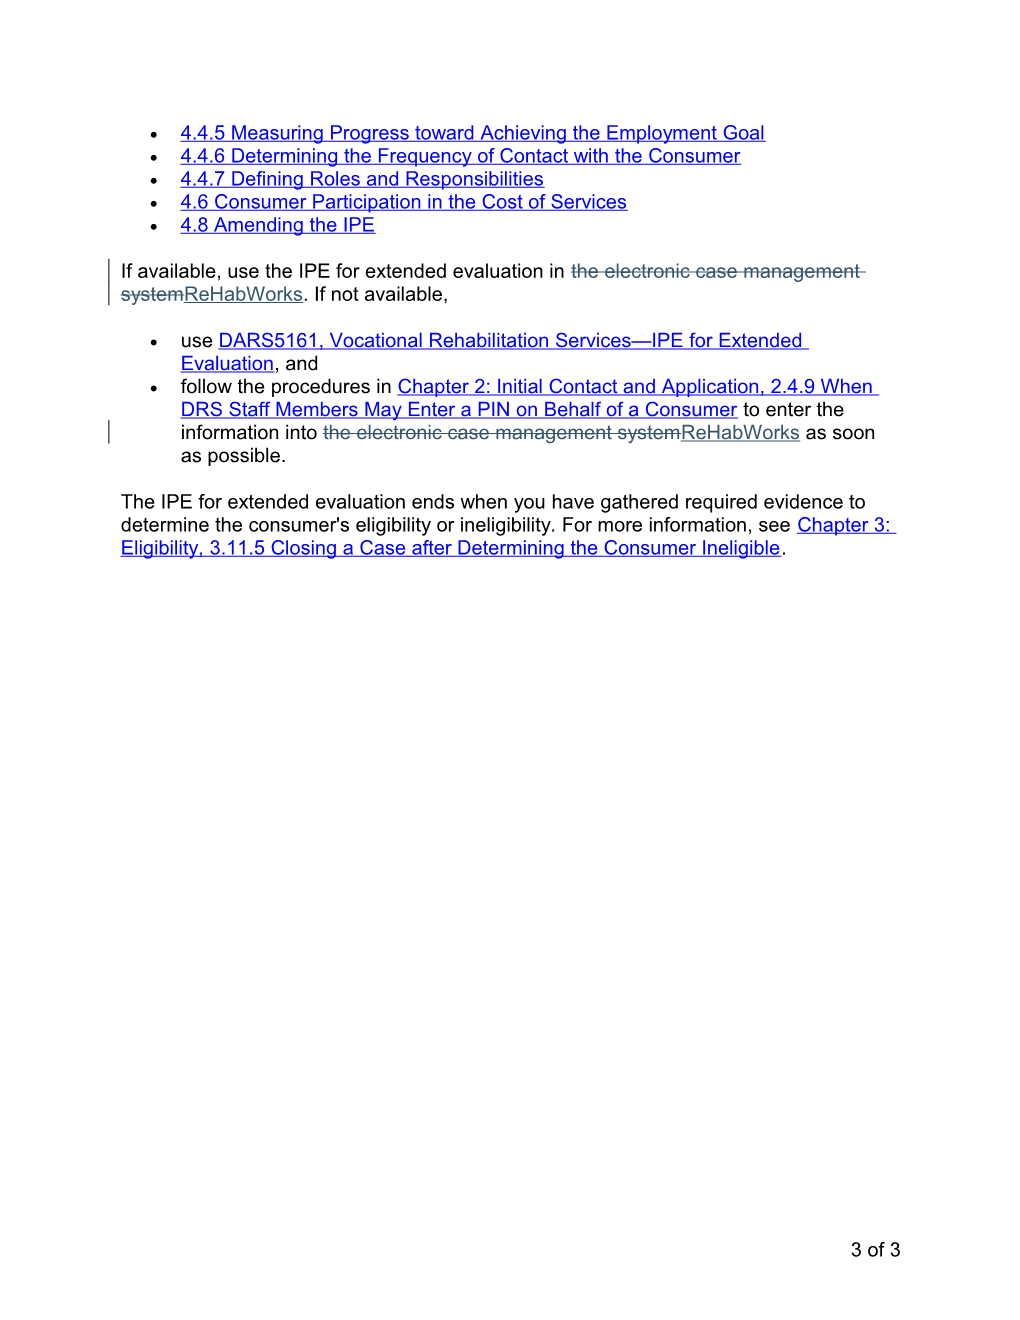 DRS RPM Chapter 4 Revisions, April 7, 2014